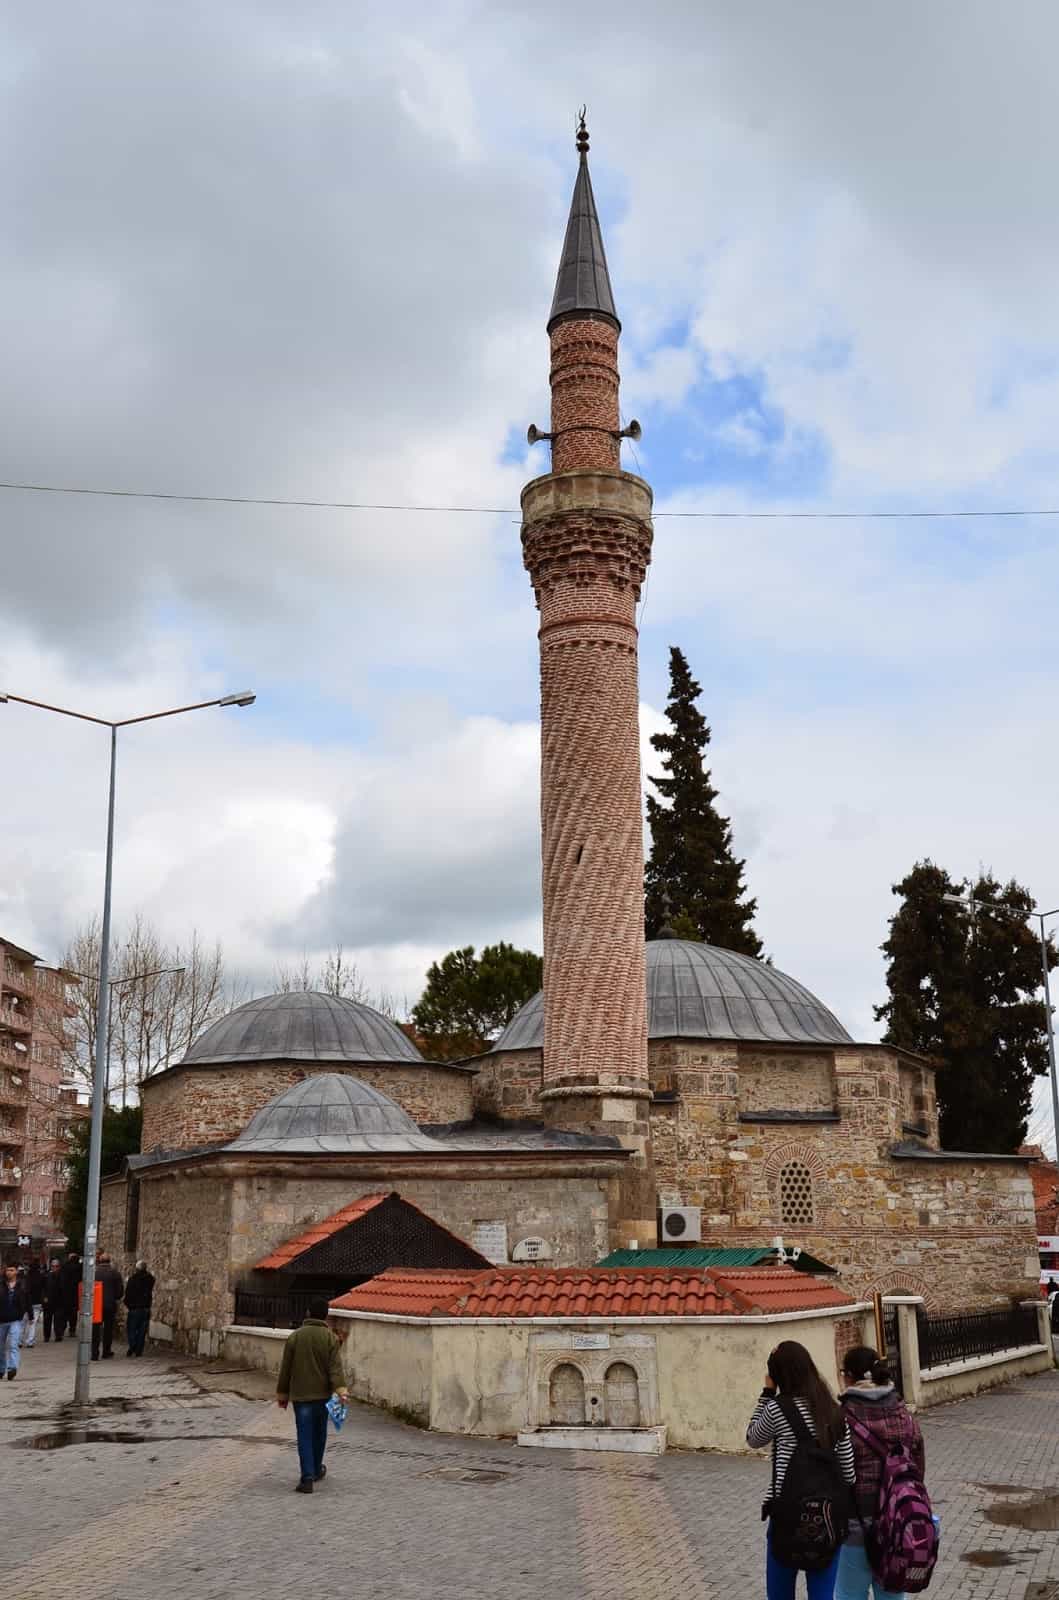 Burma Mosque in Uşak, Turkey